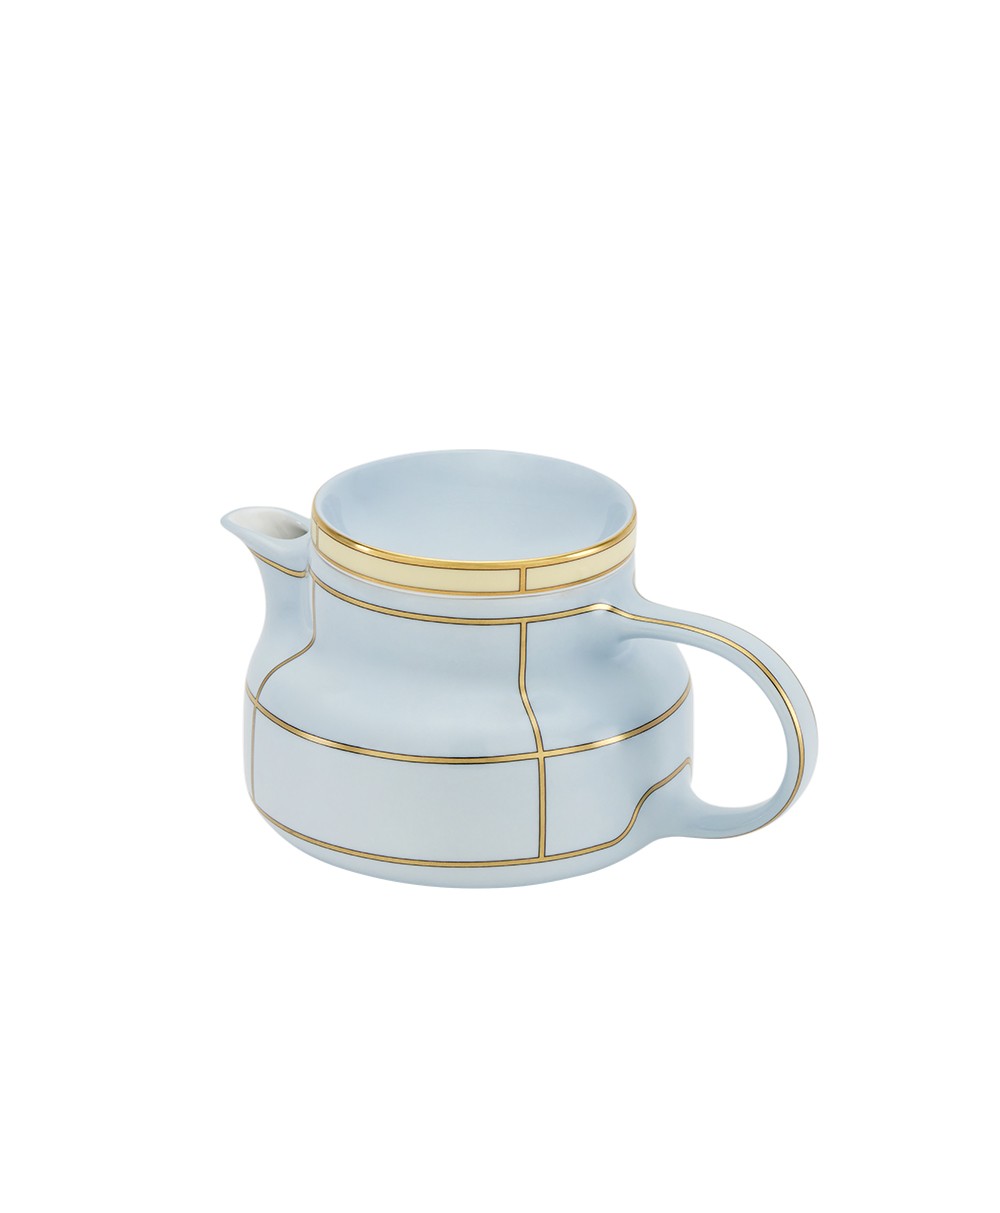 Hier abgebildet der Teapot with Cover der Diva Kollektion von Ginori 1735 - RAUM concept store